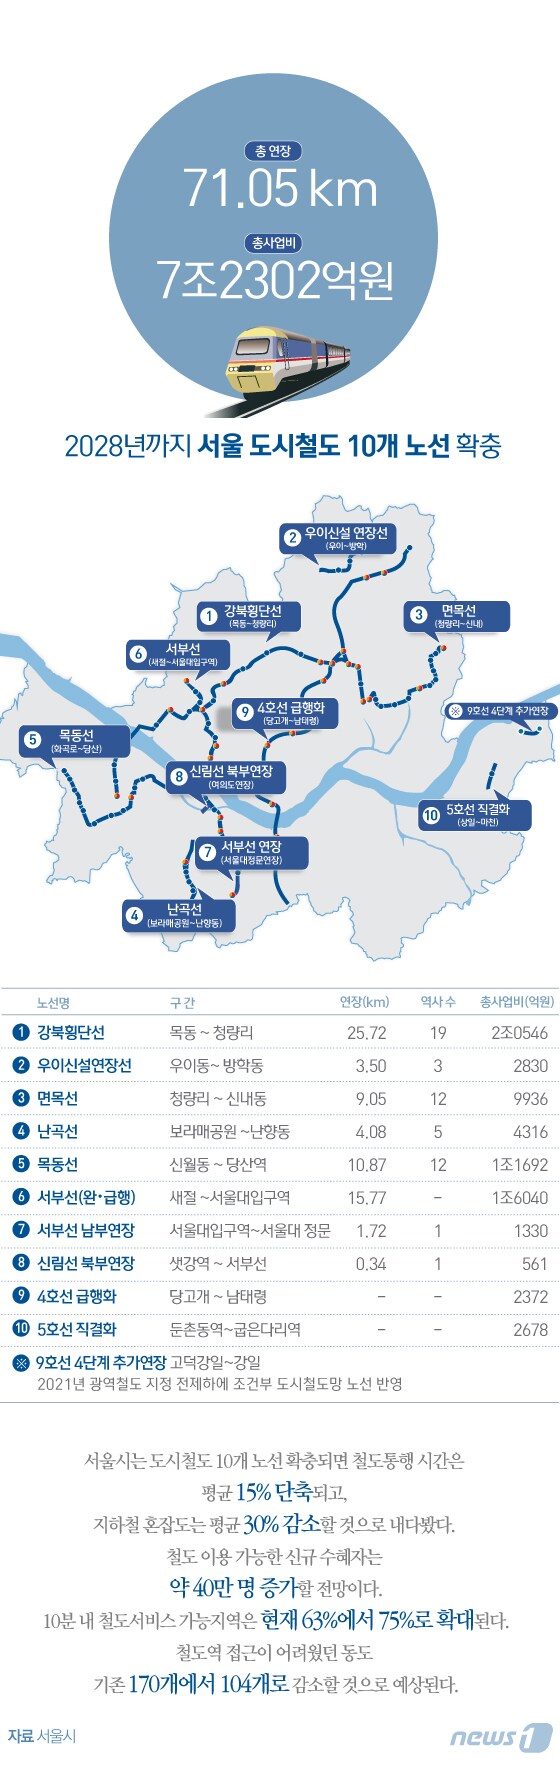 [그래픽뉴스] 2028년까지 서울 도시철도 10개 노선 확충